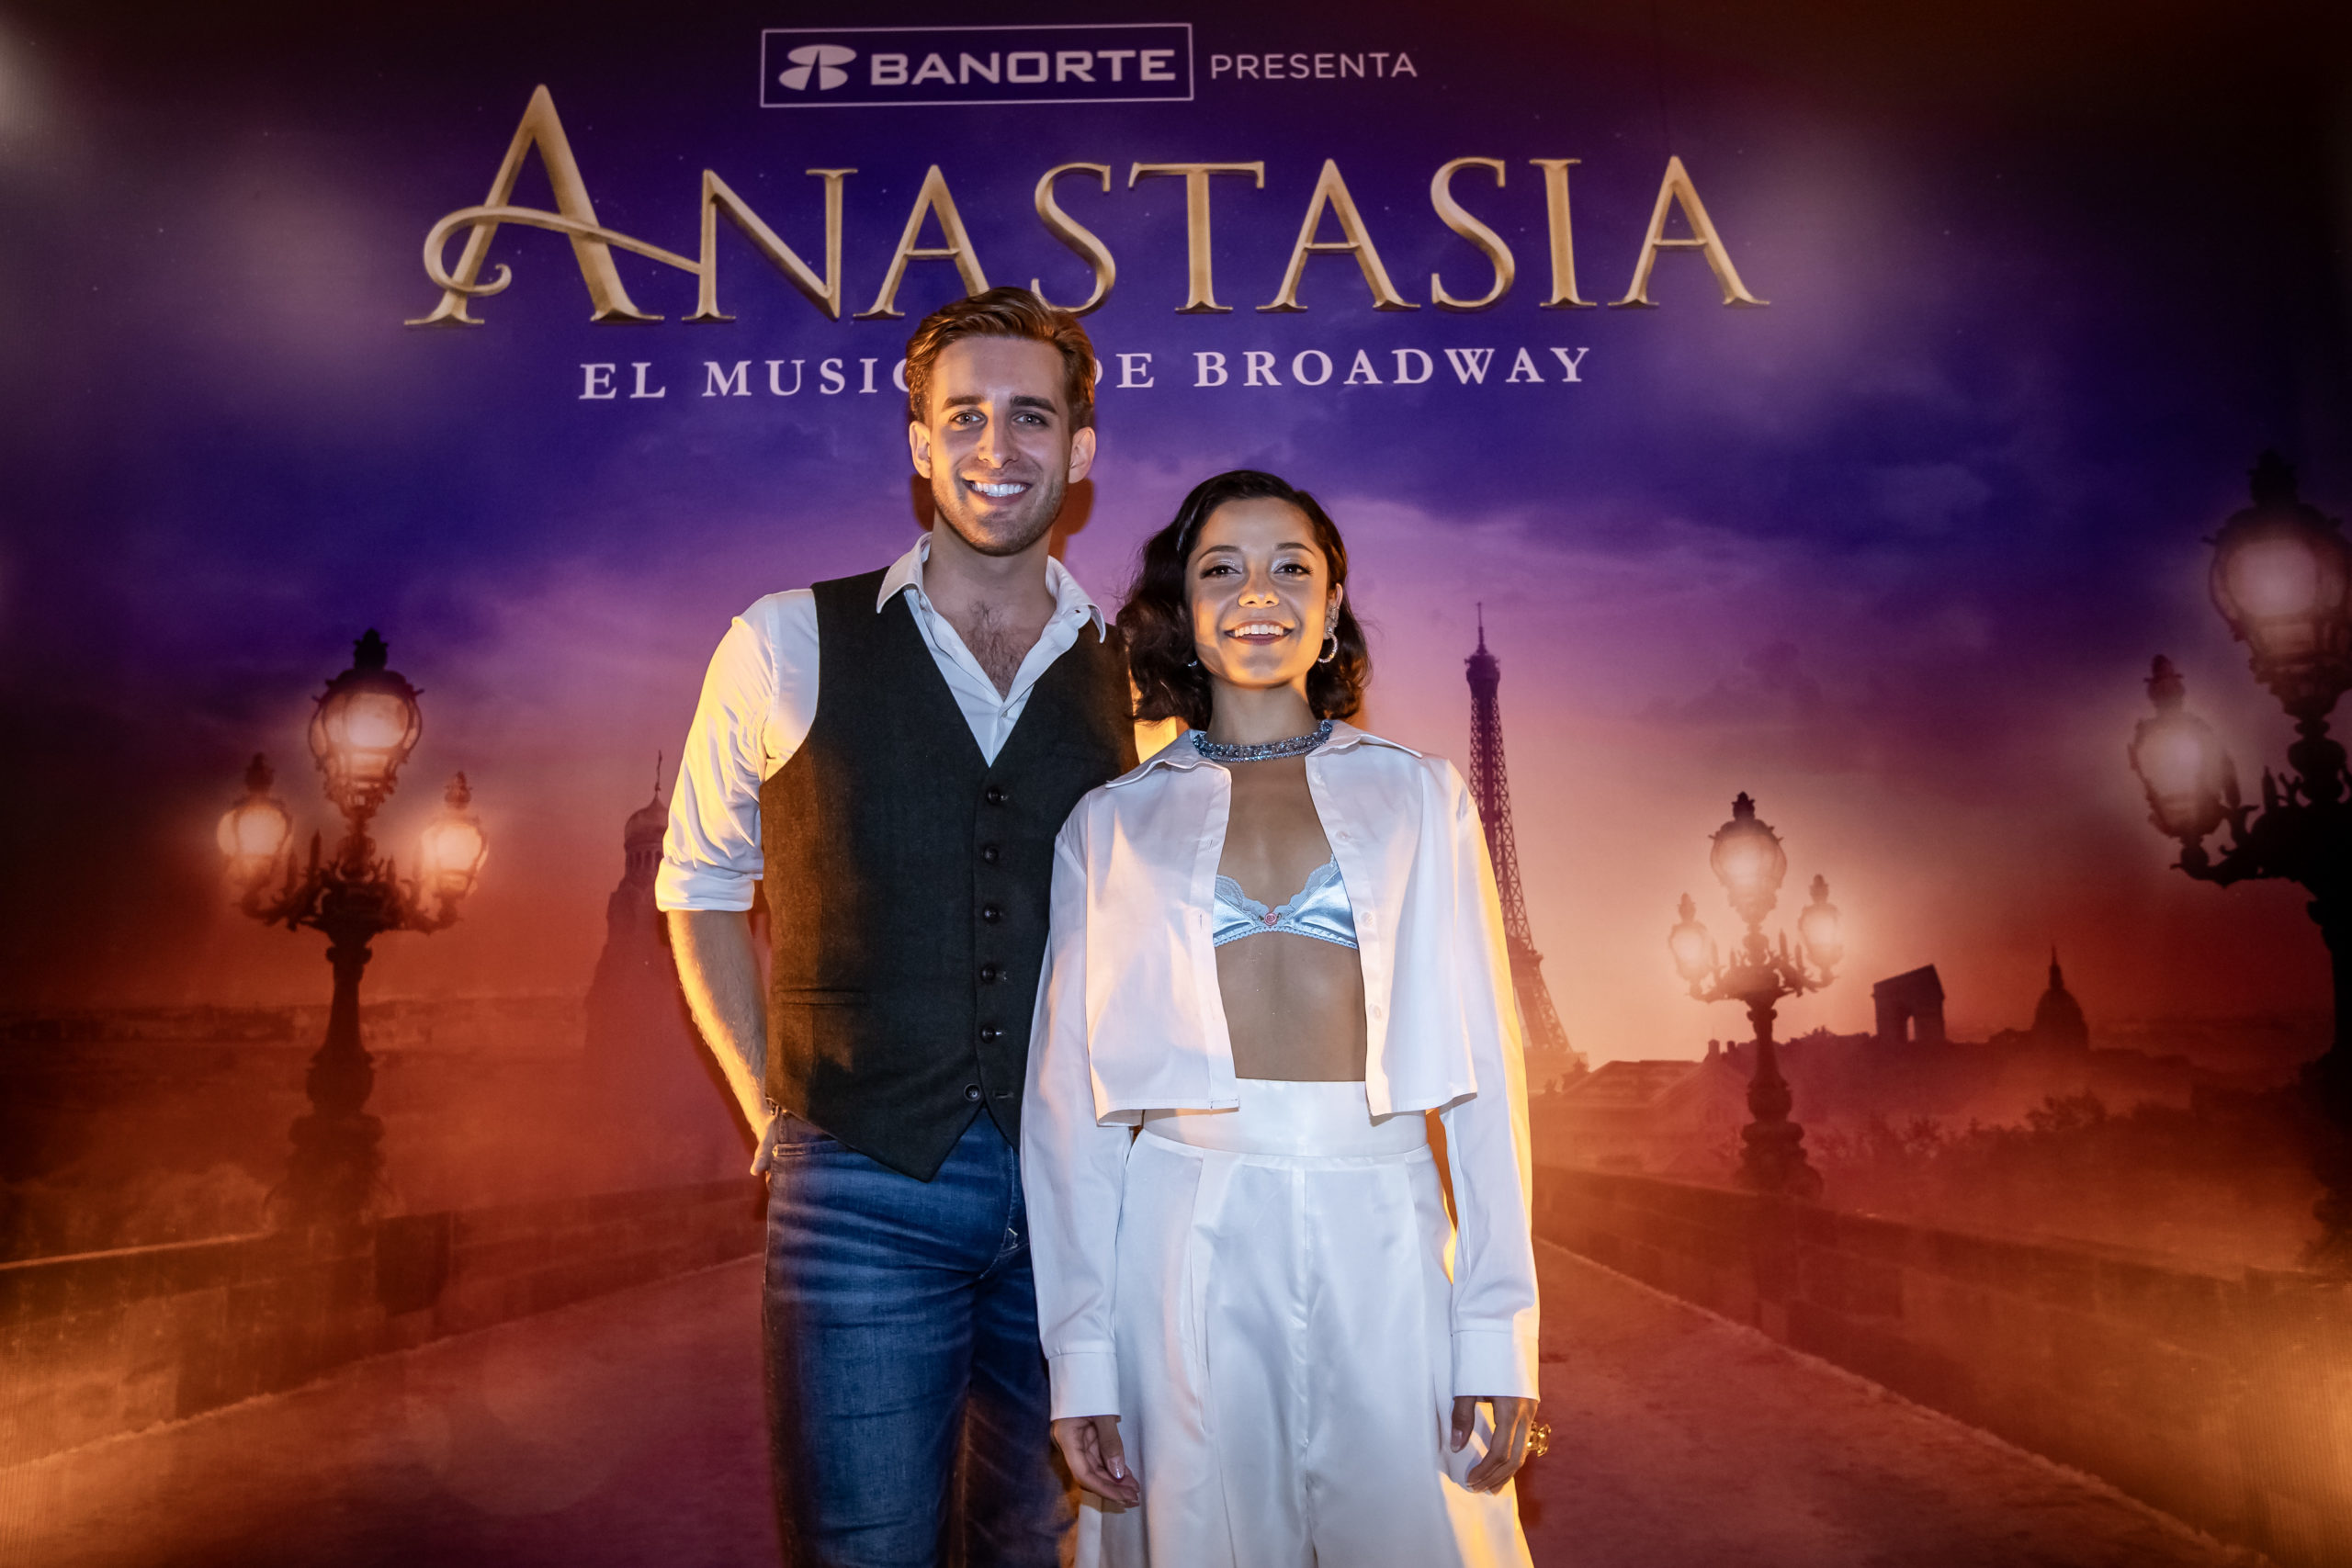 Anastasia el Musical de Broadway tendrá su primera función en el Teatro Telcel el próximo 3 de agosto.